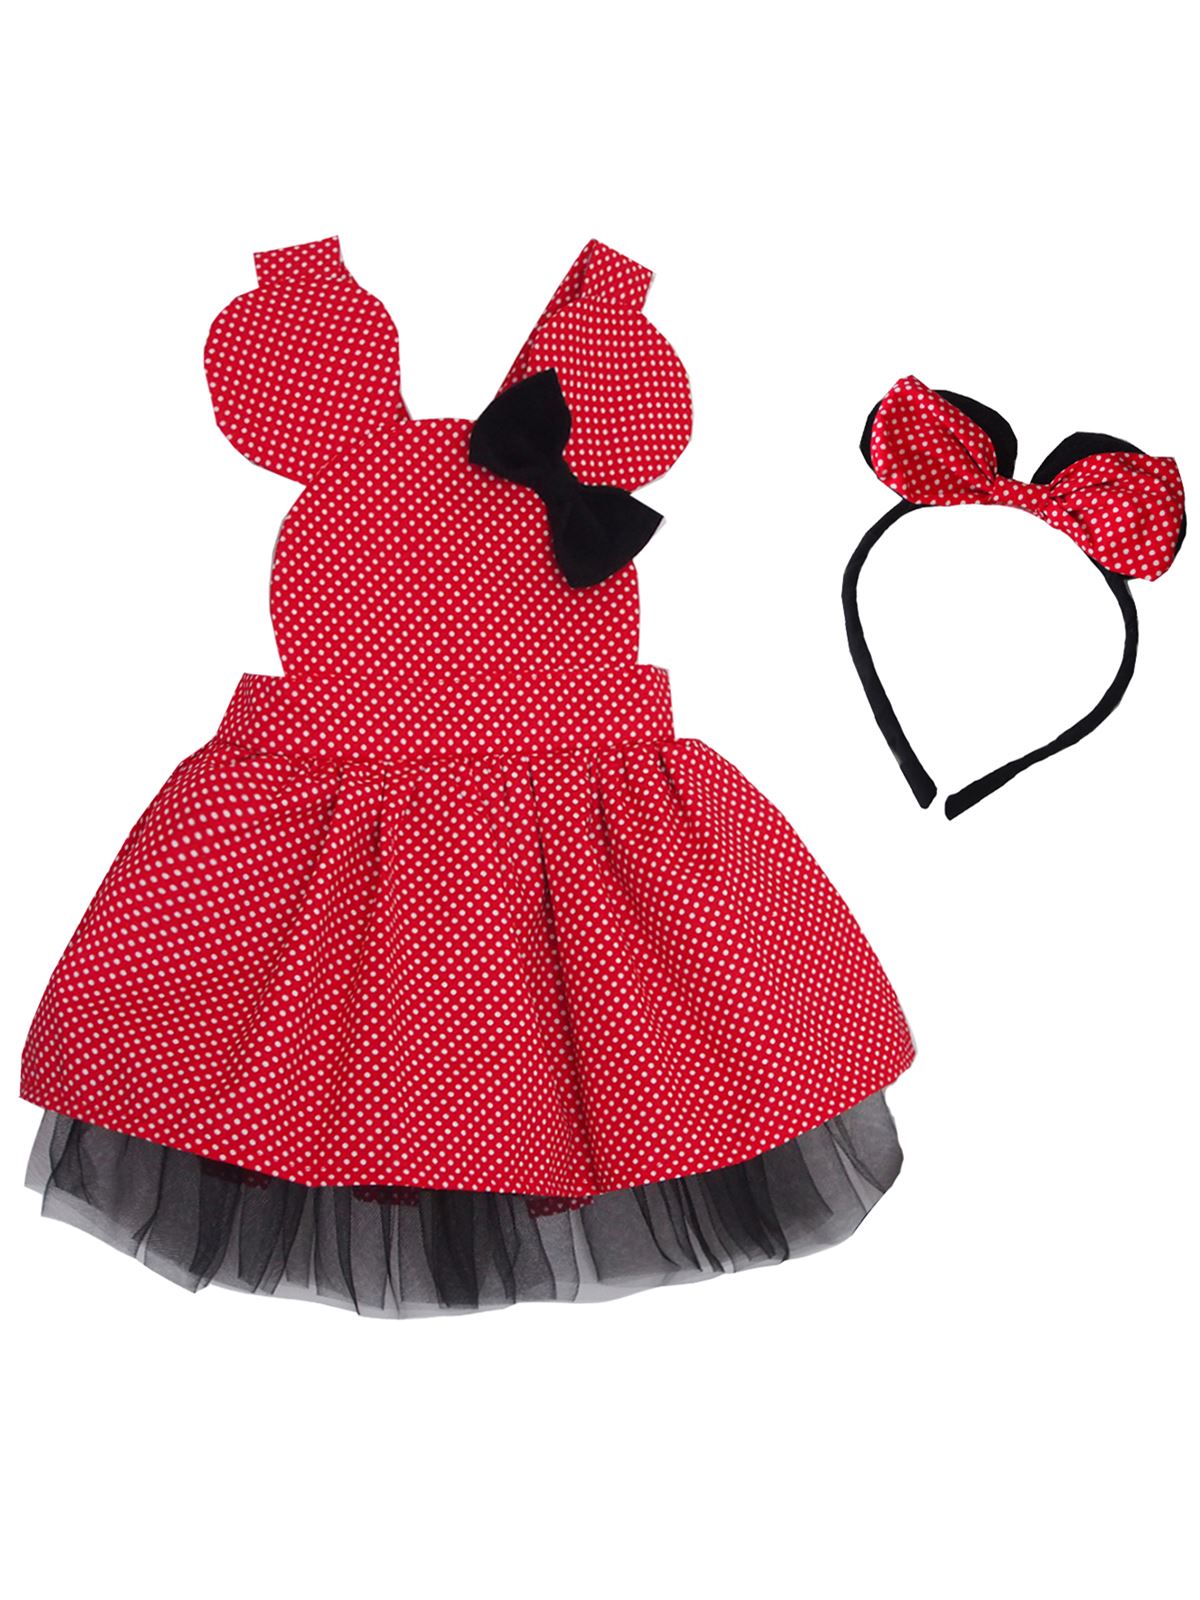 S. Babba Kız Çocuk Elbise Puantiyeli - Tütü Elbise Taç Takım Kırmızı 1-4 Yaş